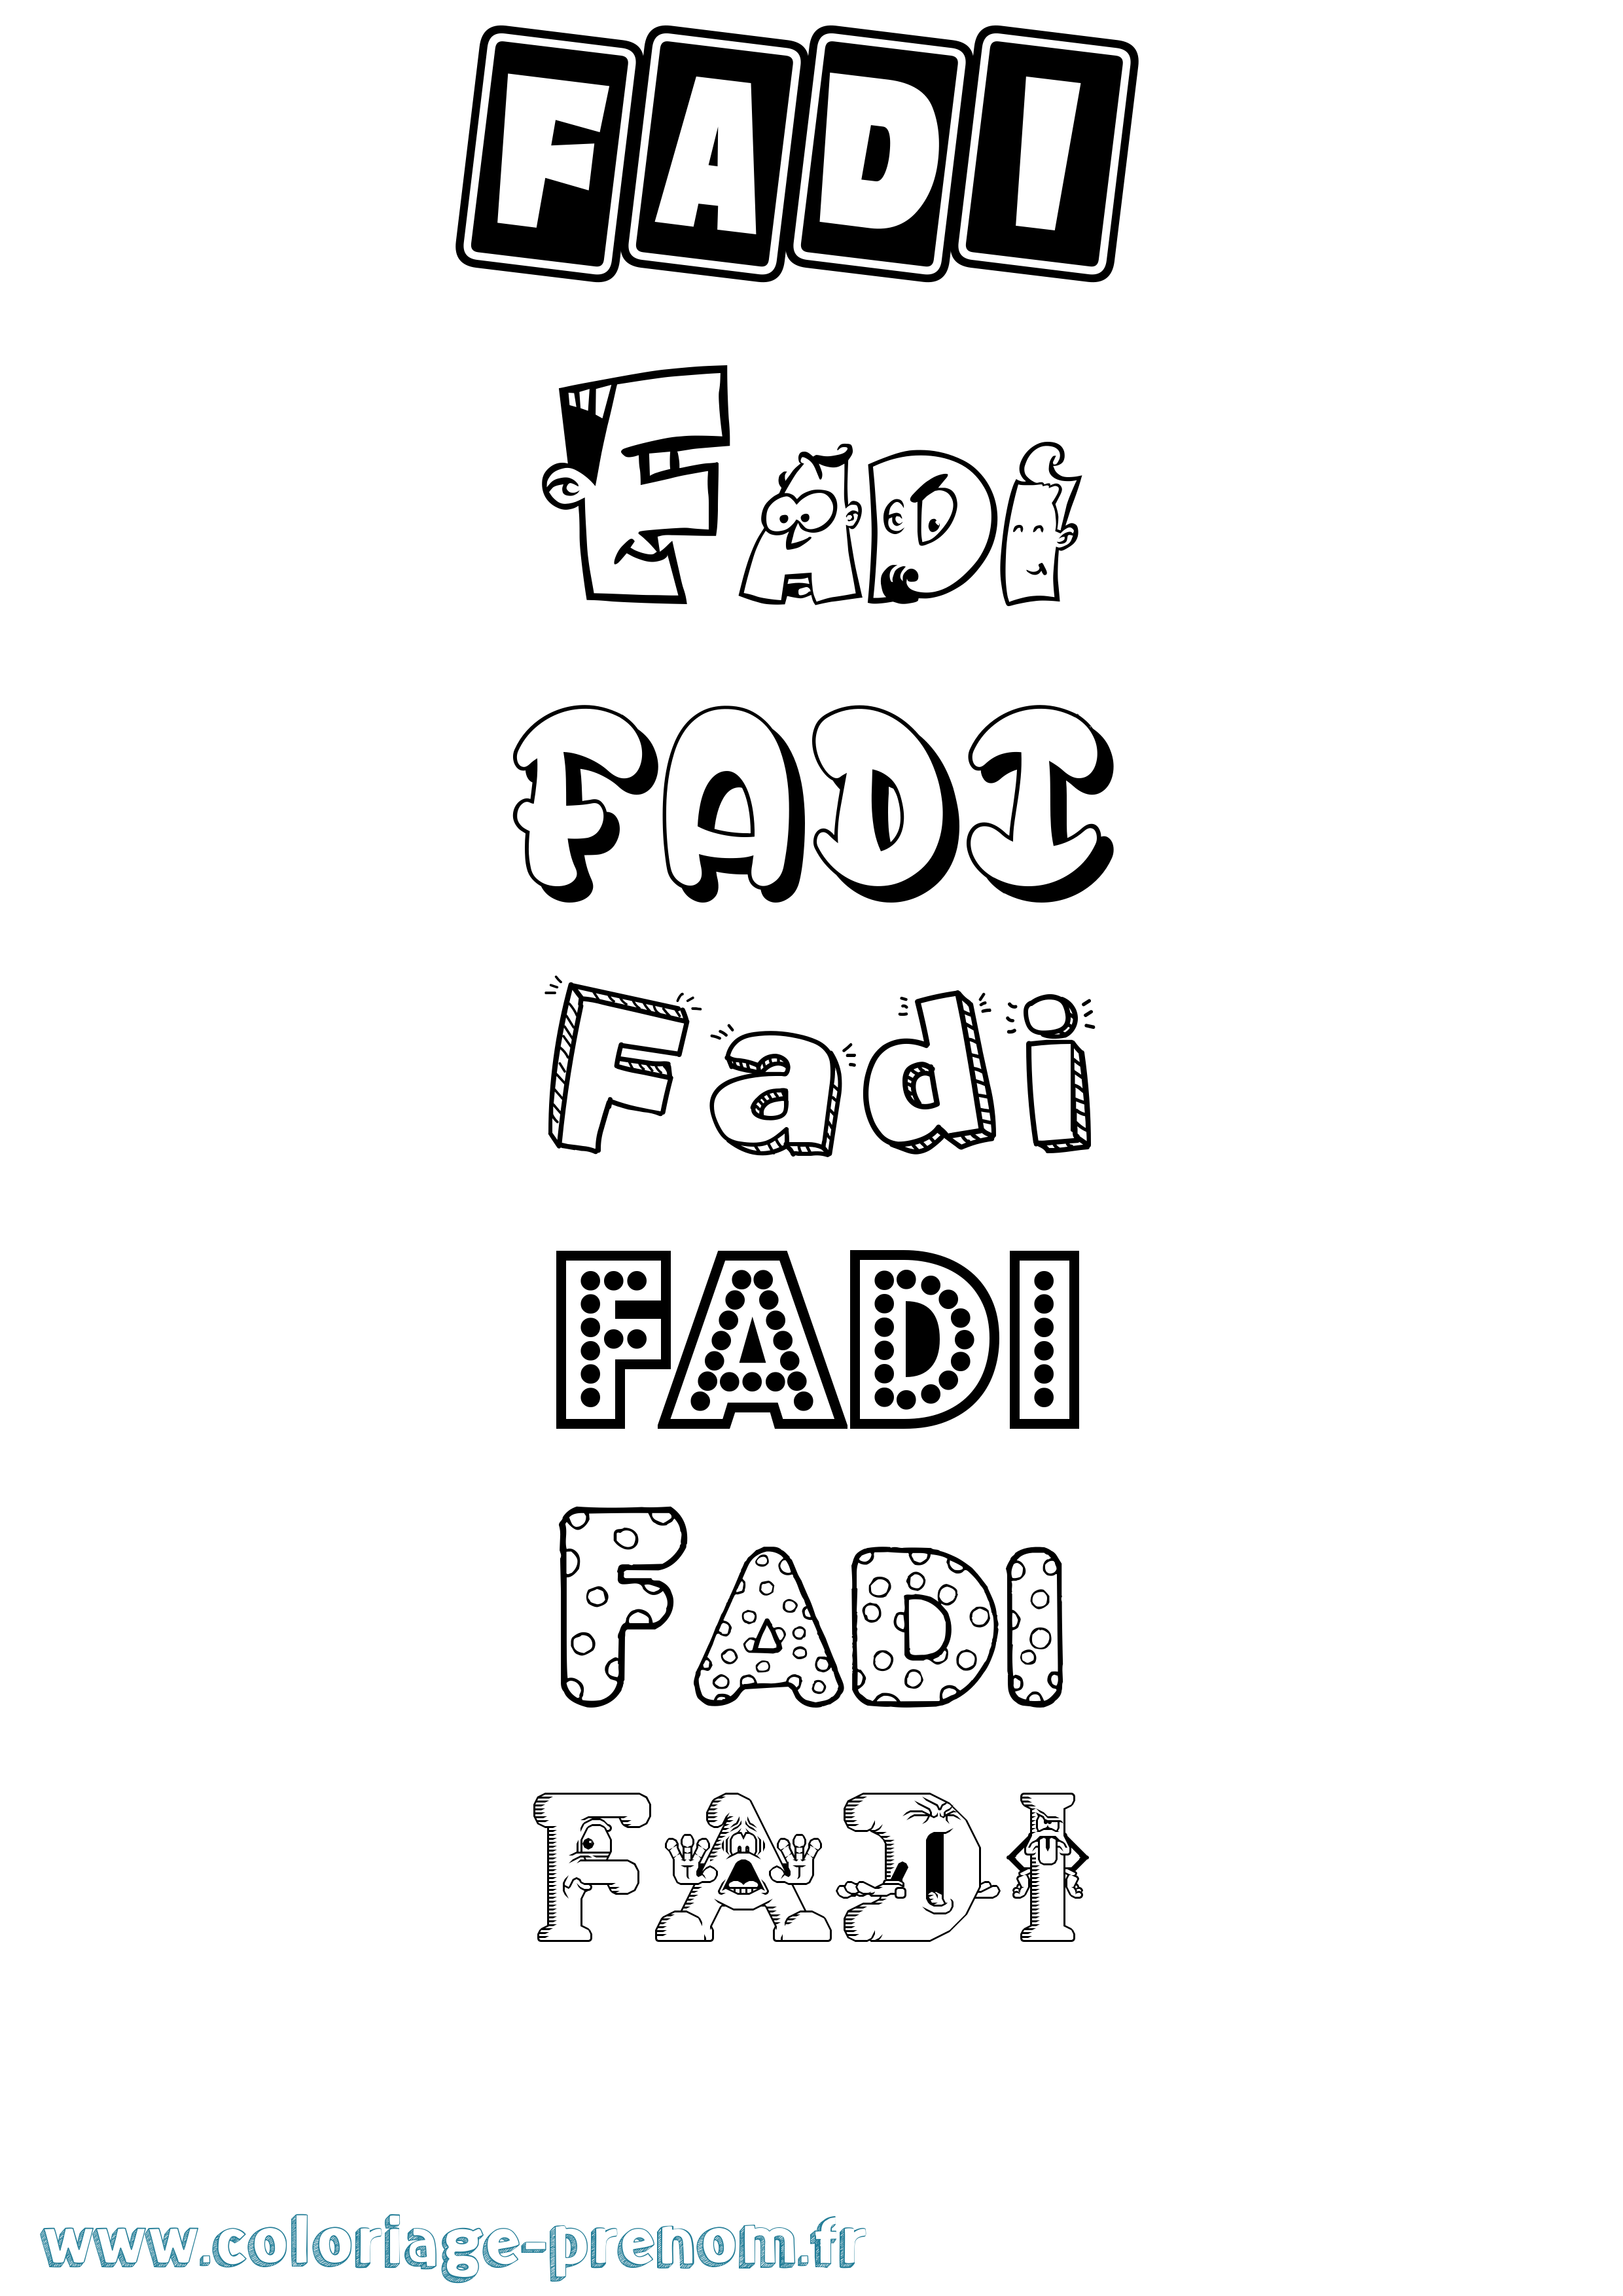 Coloriage prénom Fadi Fun